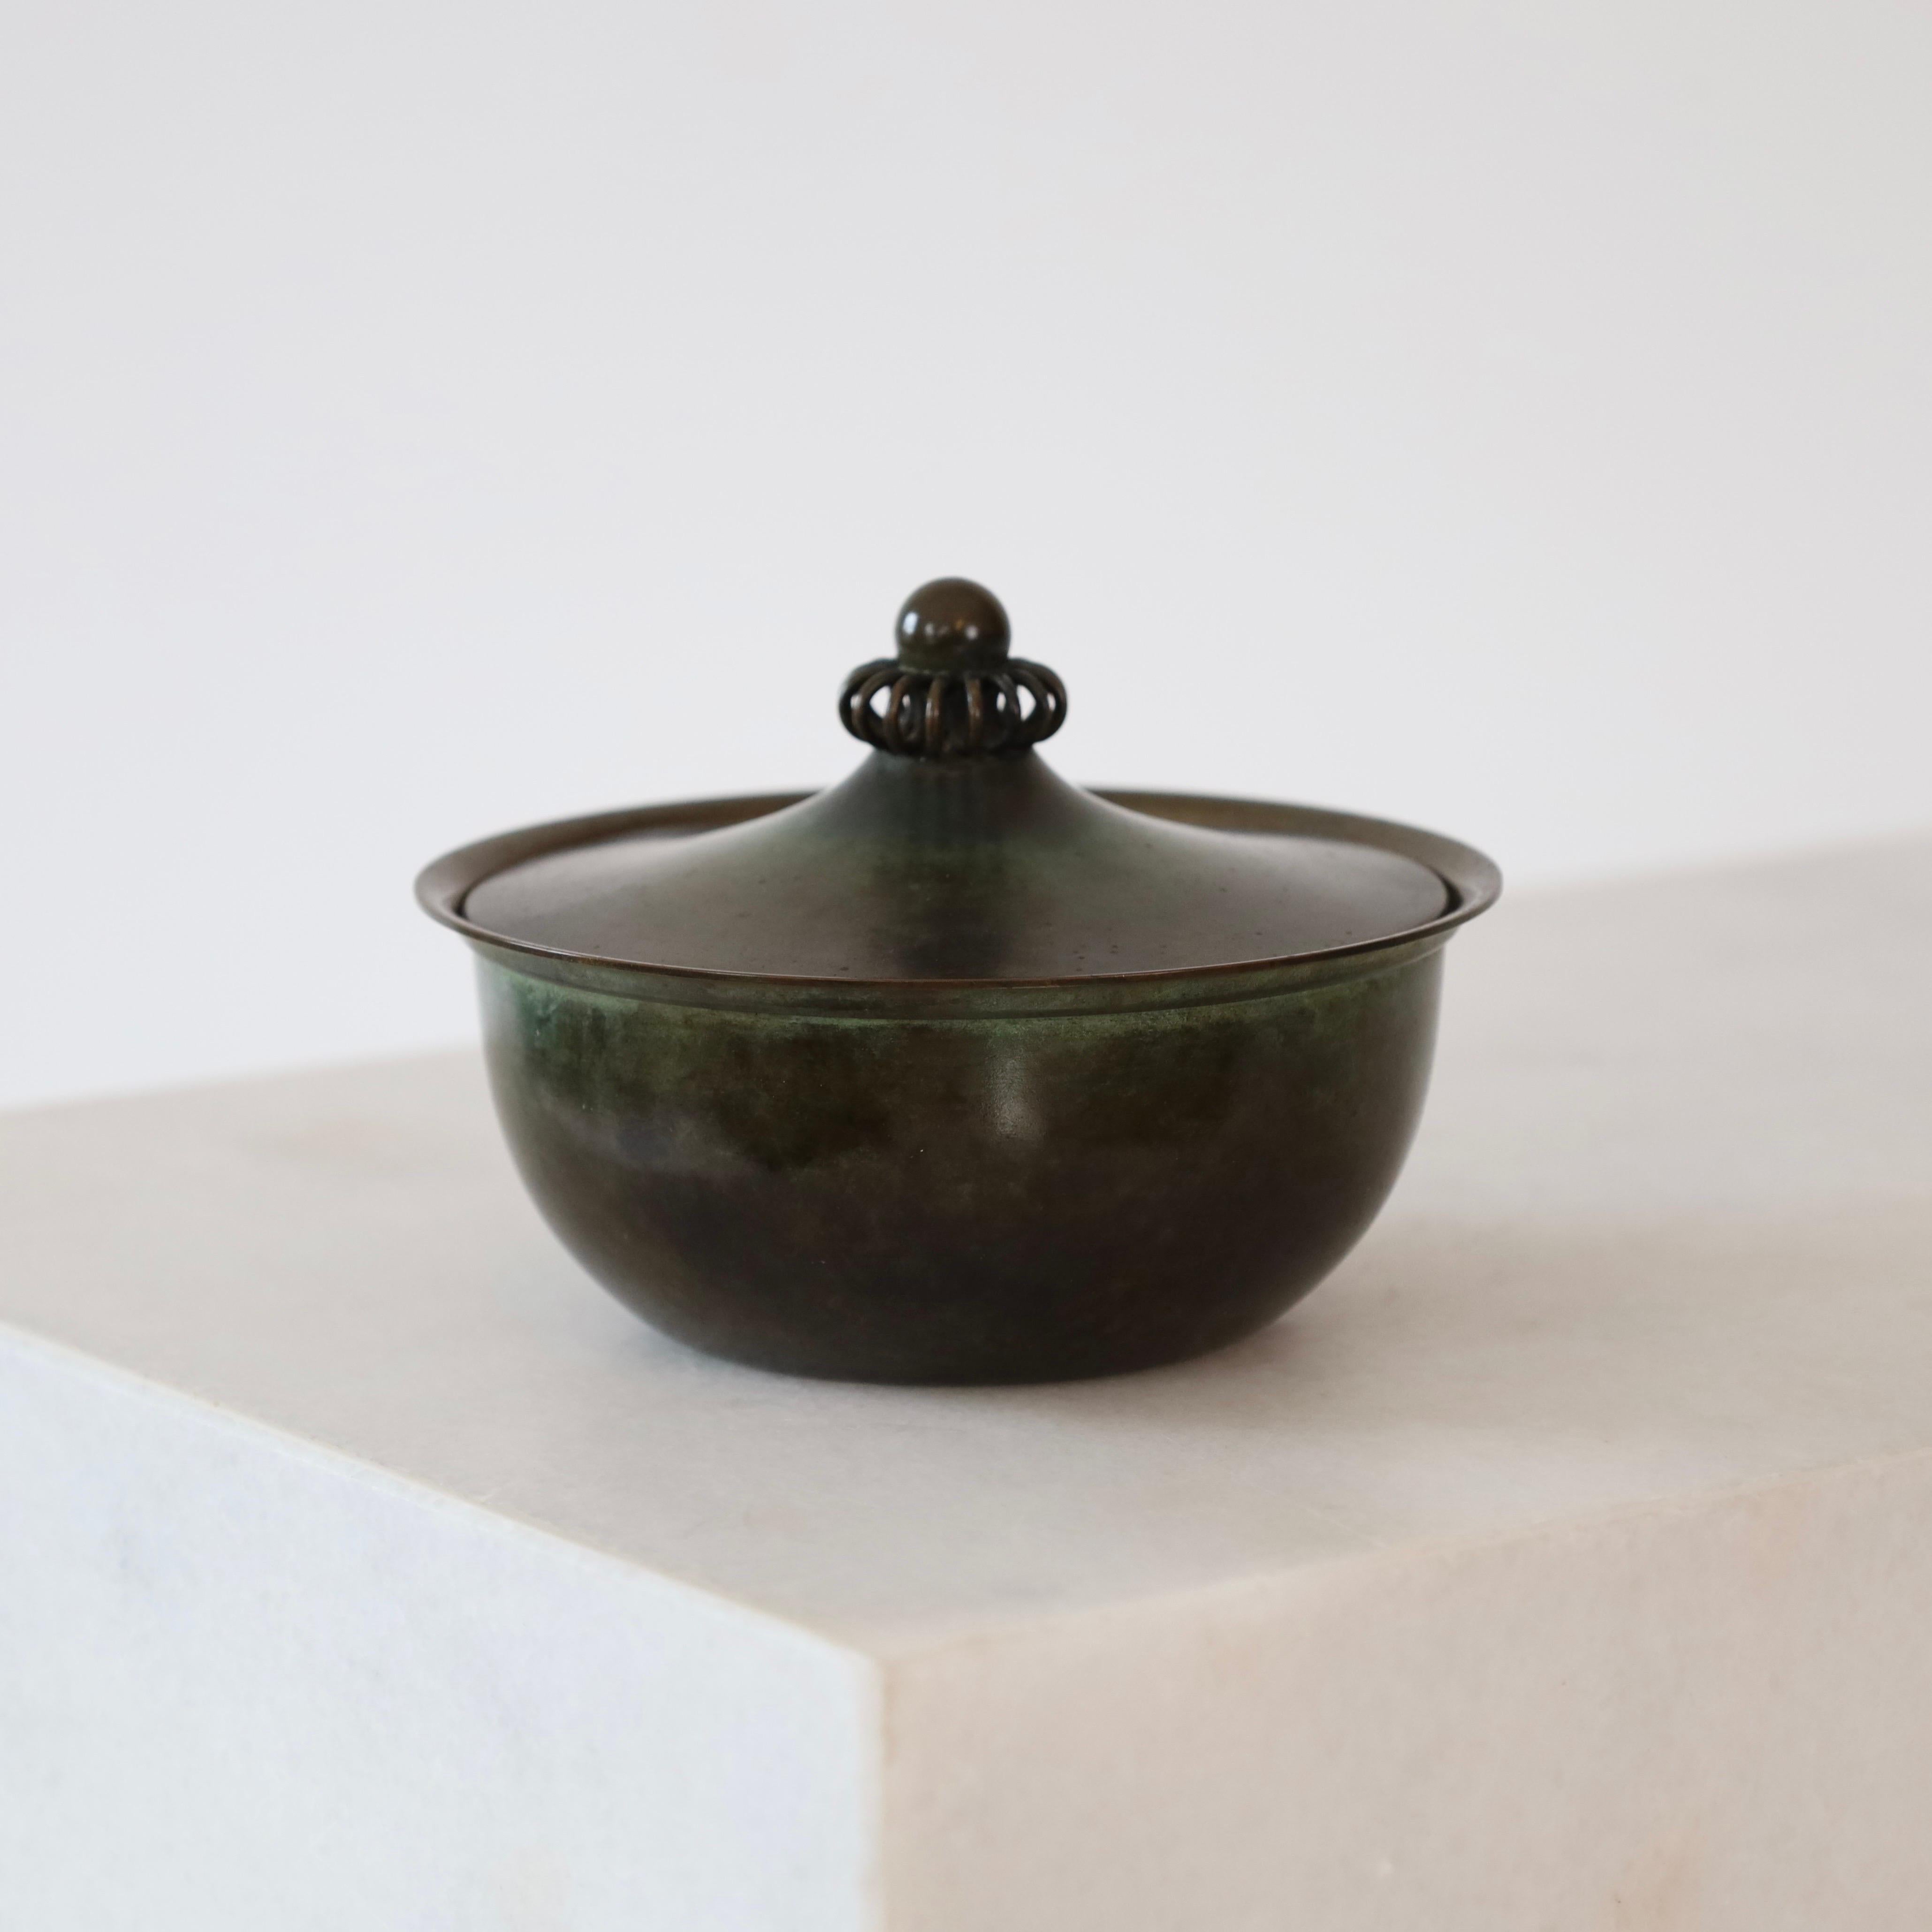 Rare boîte à bijoux ronde en bronze clair conçue par Just Andersen dans les années 1930. C'est une jolie petite chose pour un endroit magnifique.

* Une jarre ronde en bronze et éclairée avec des ornements
* Designer : Just Andersen
* Modèle : LB